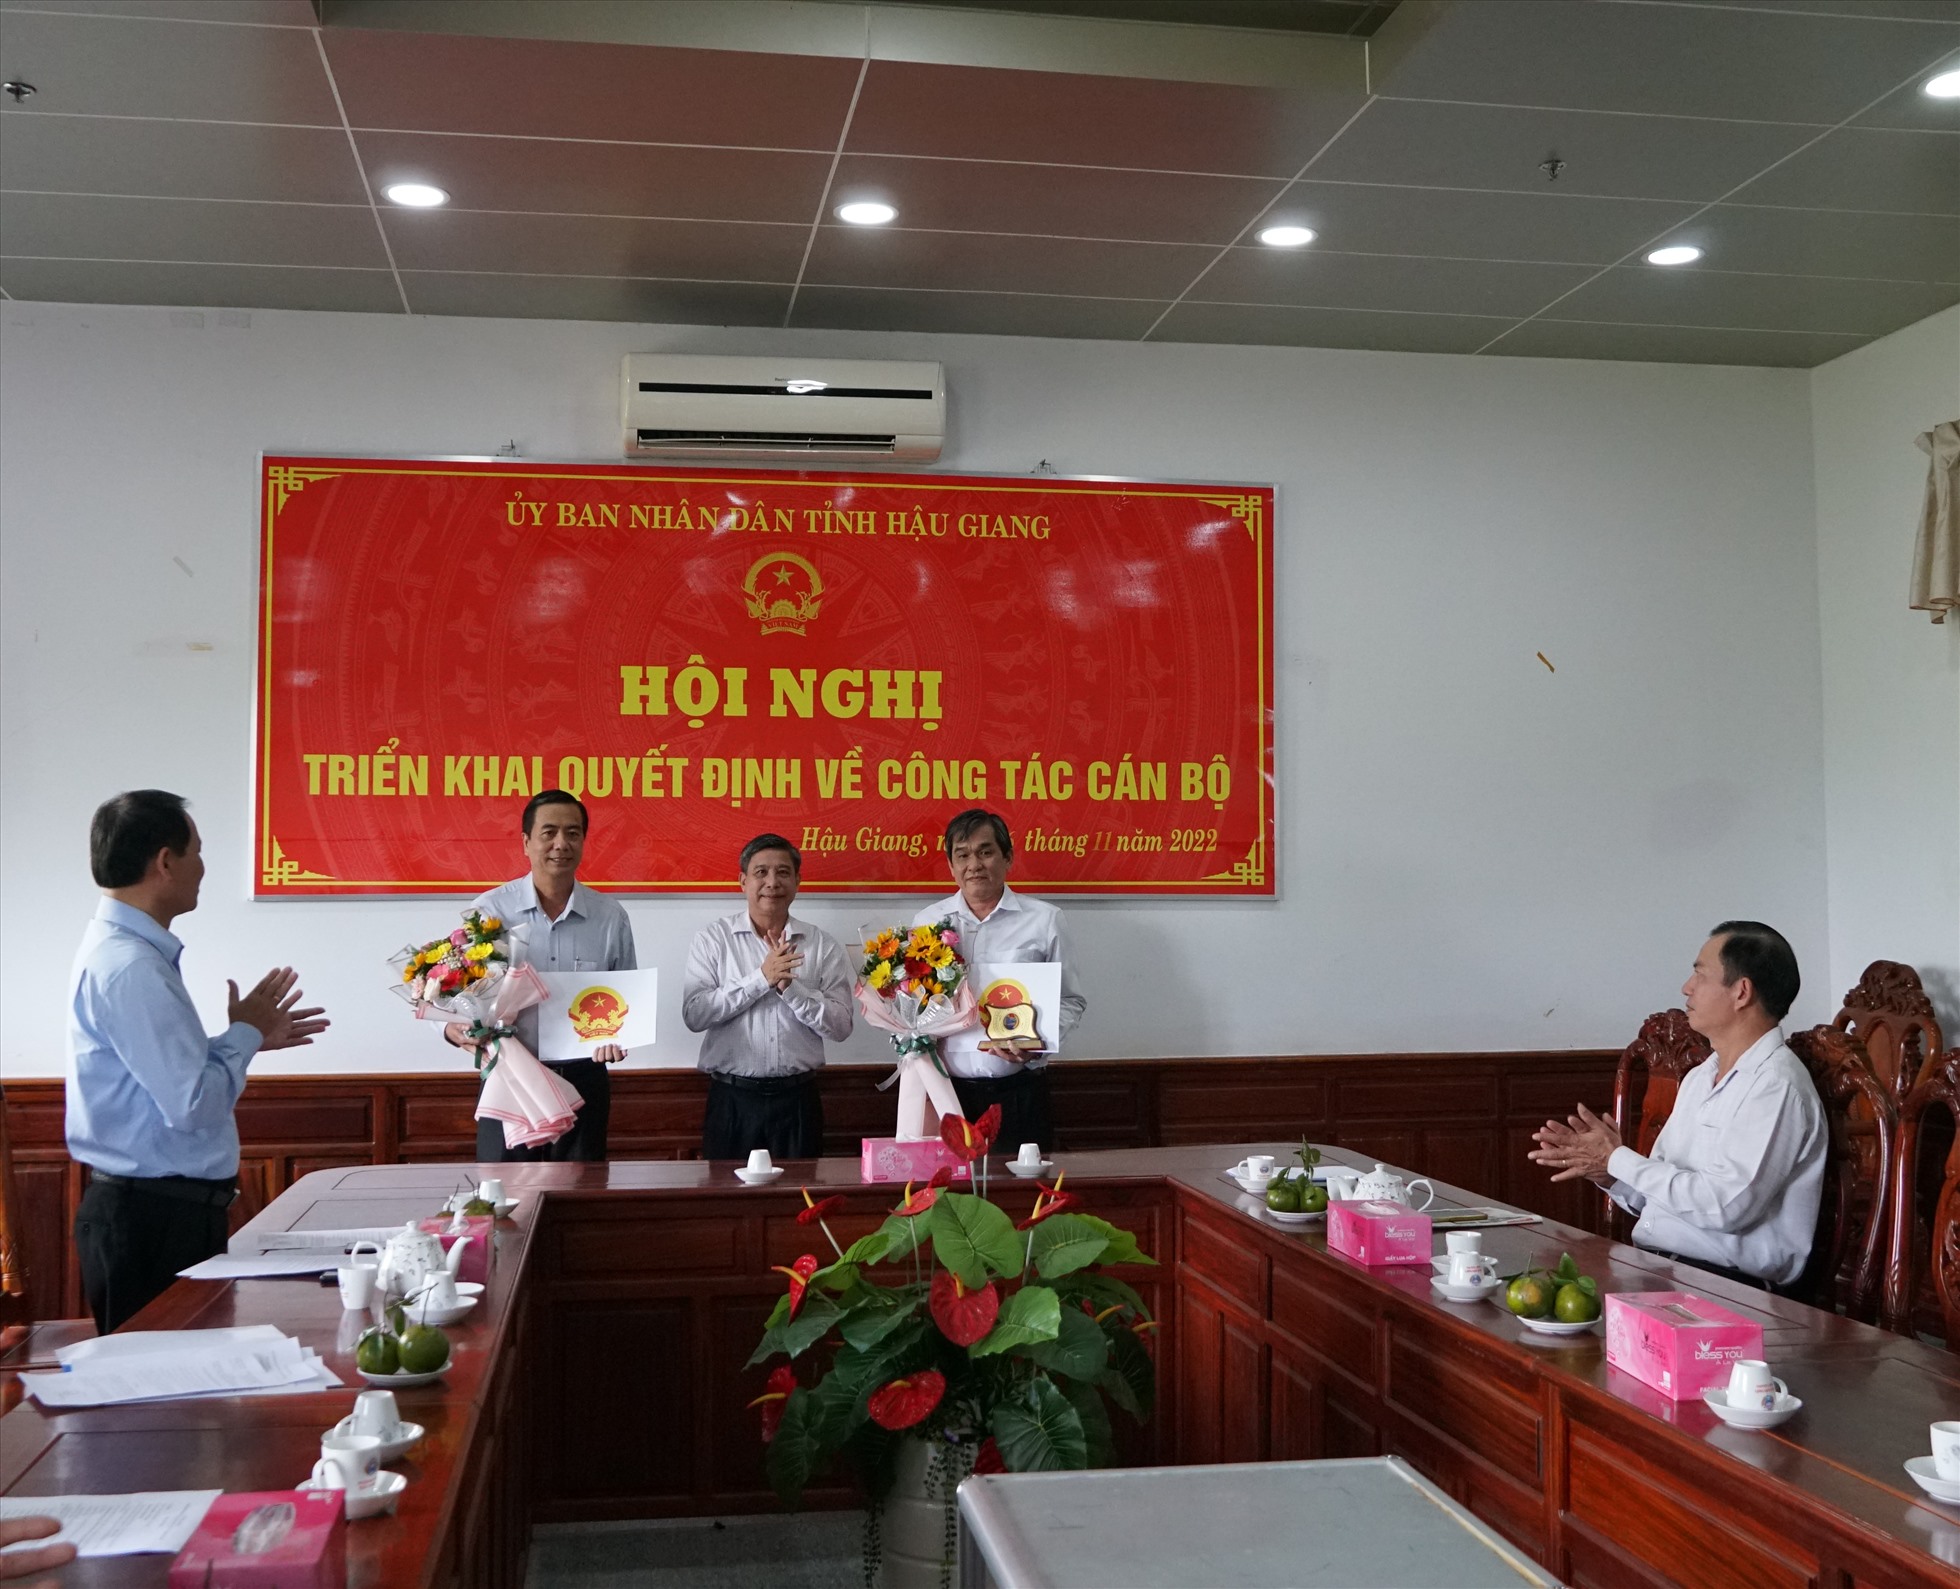 Chủ tịch UBND tỉnh Hậu Giang Đồng Văn Thanh trao quyết định về công tác cán bộ